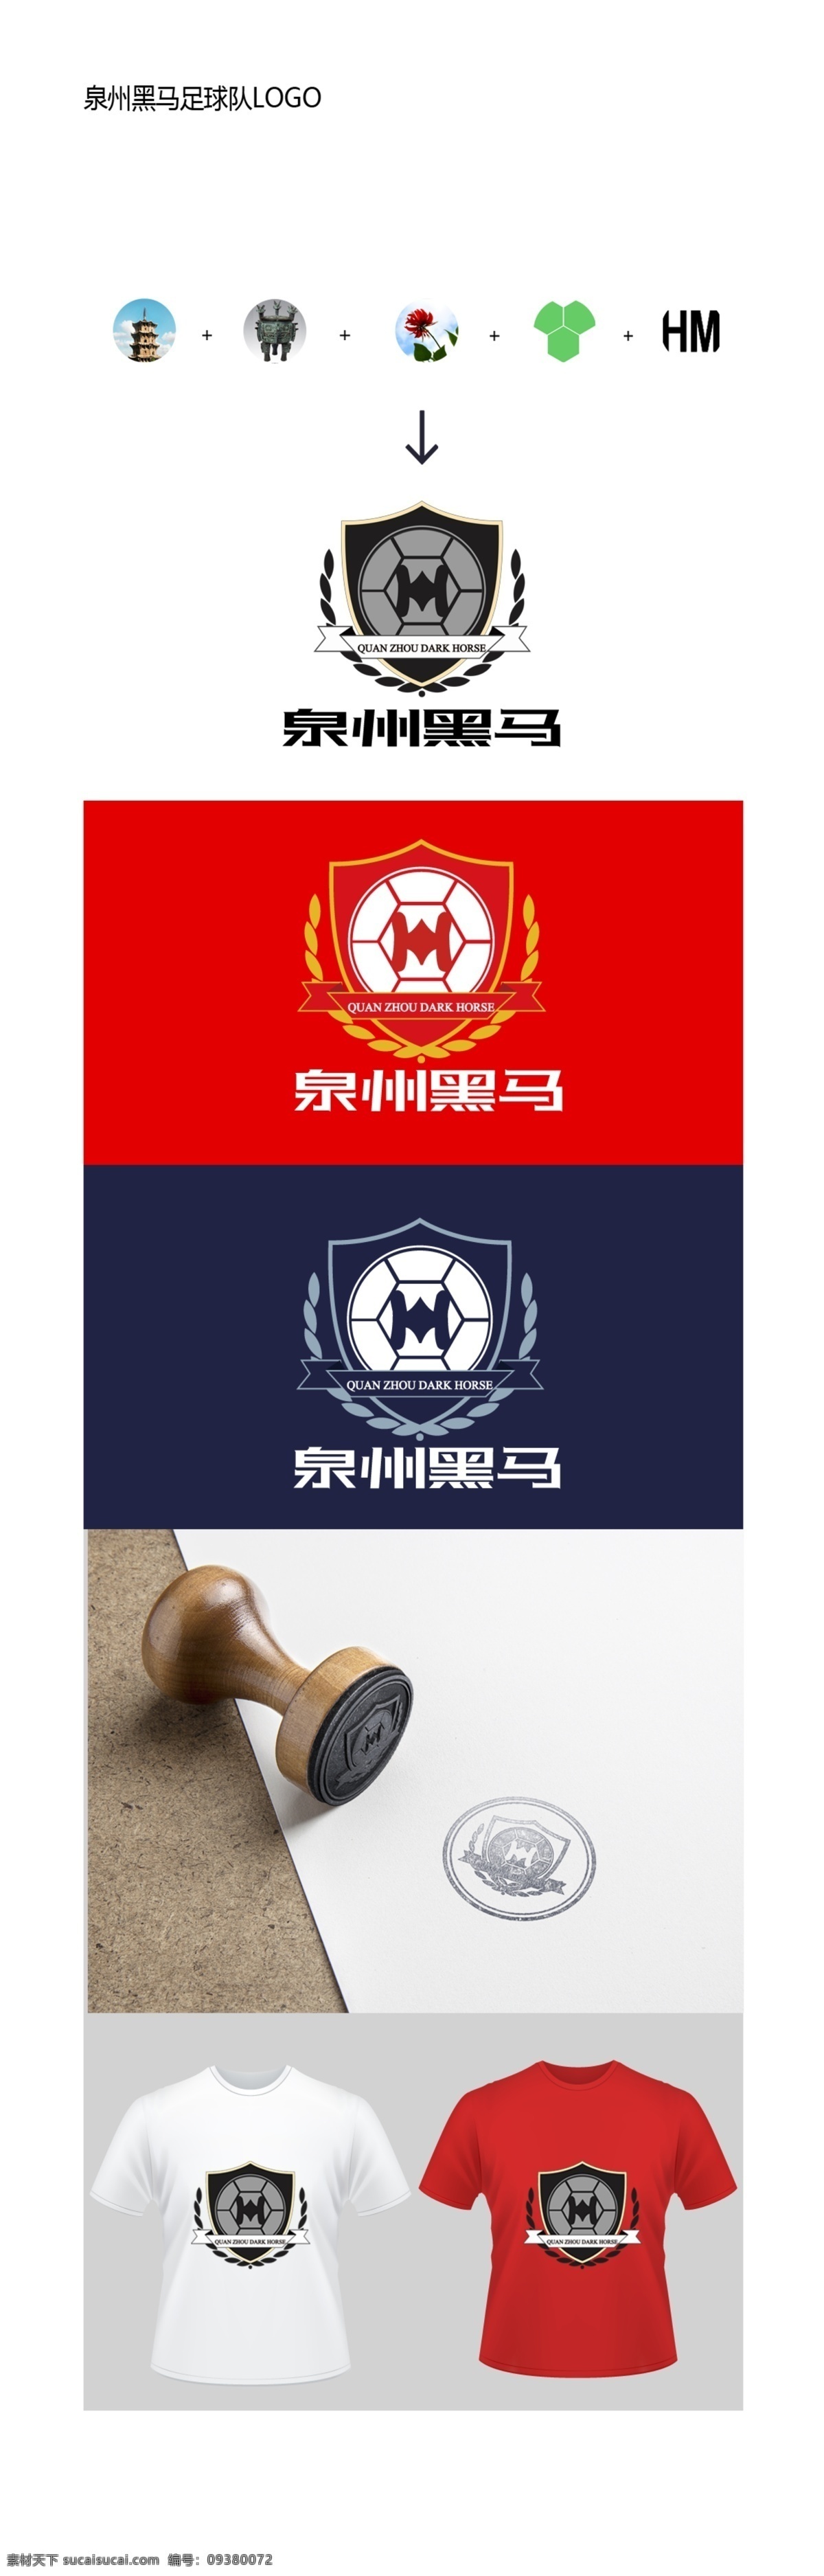 黑马logo 黑马会 马 盾牌 logo运用 字母logo m h logo